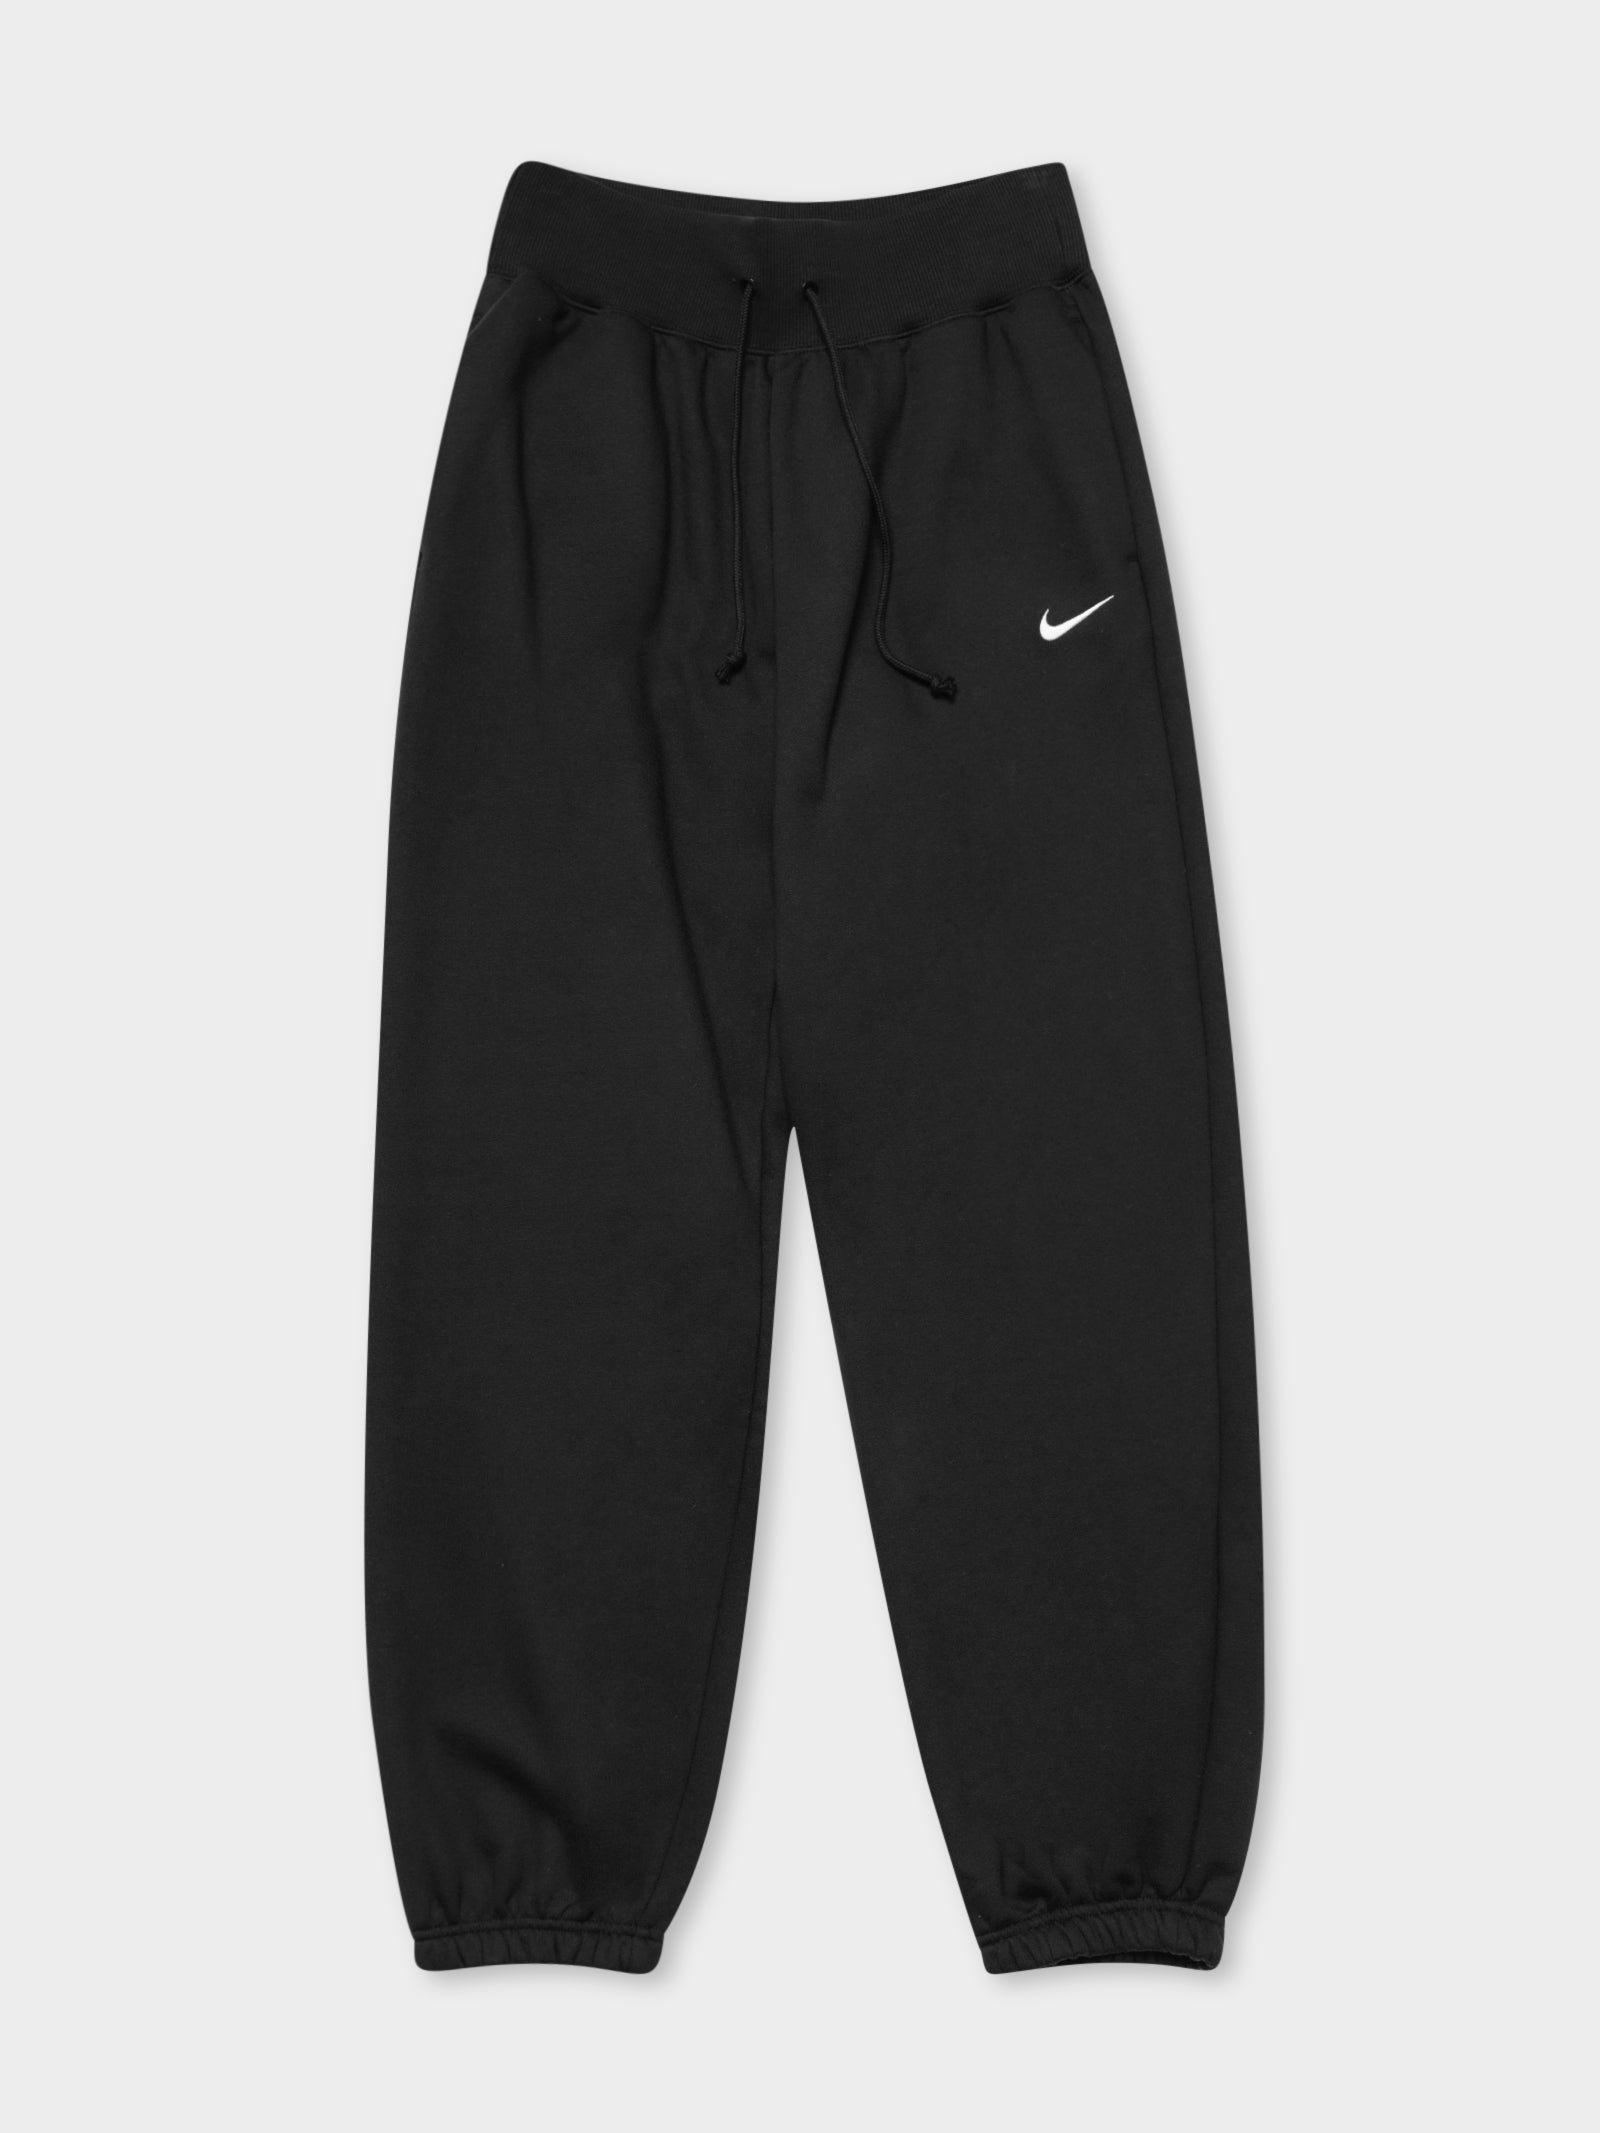 Nike Sweatpants/ Track Pants Black/ White stripes Women/ Men XS